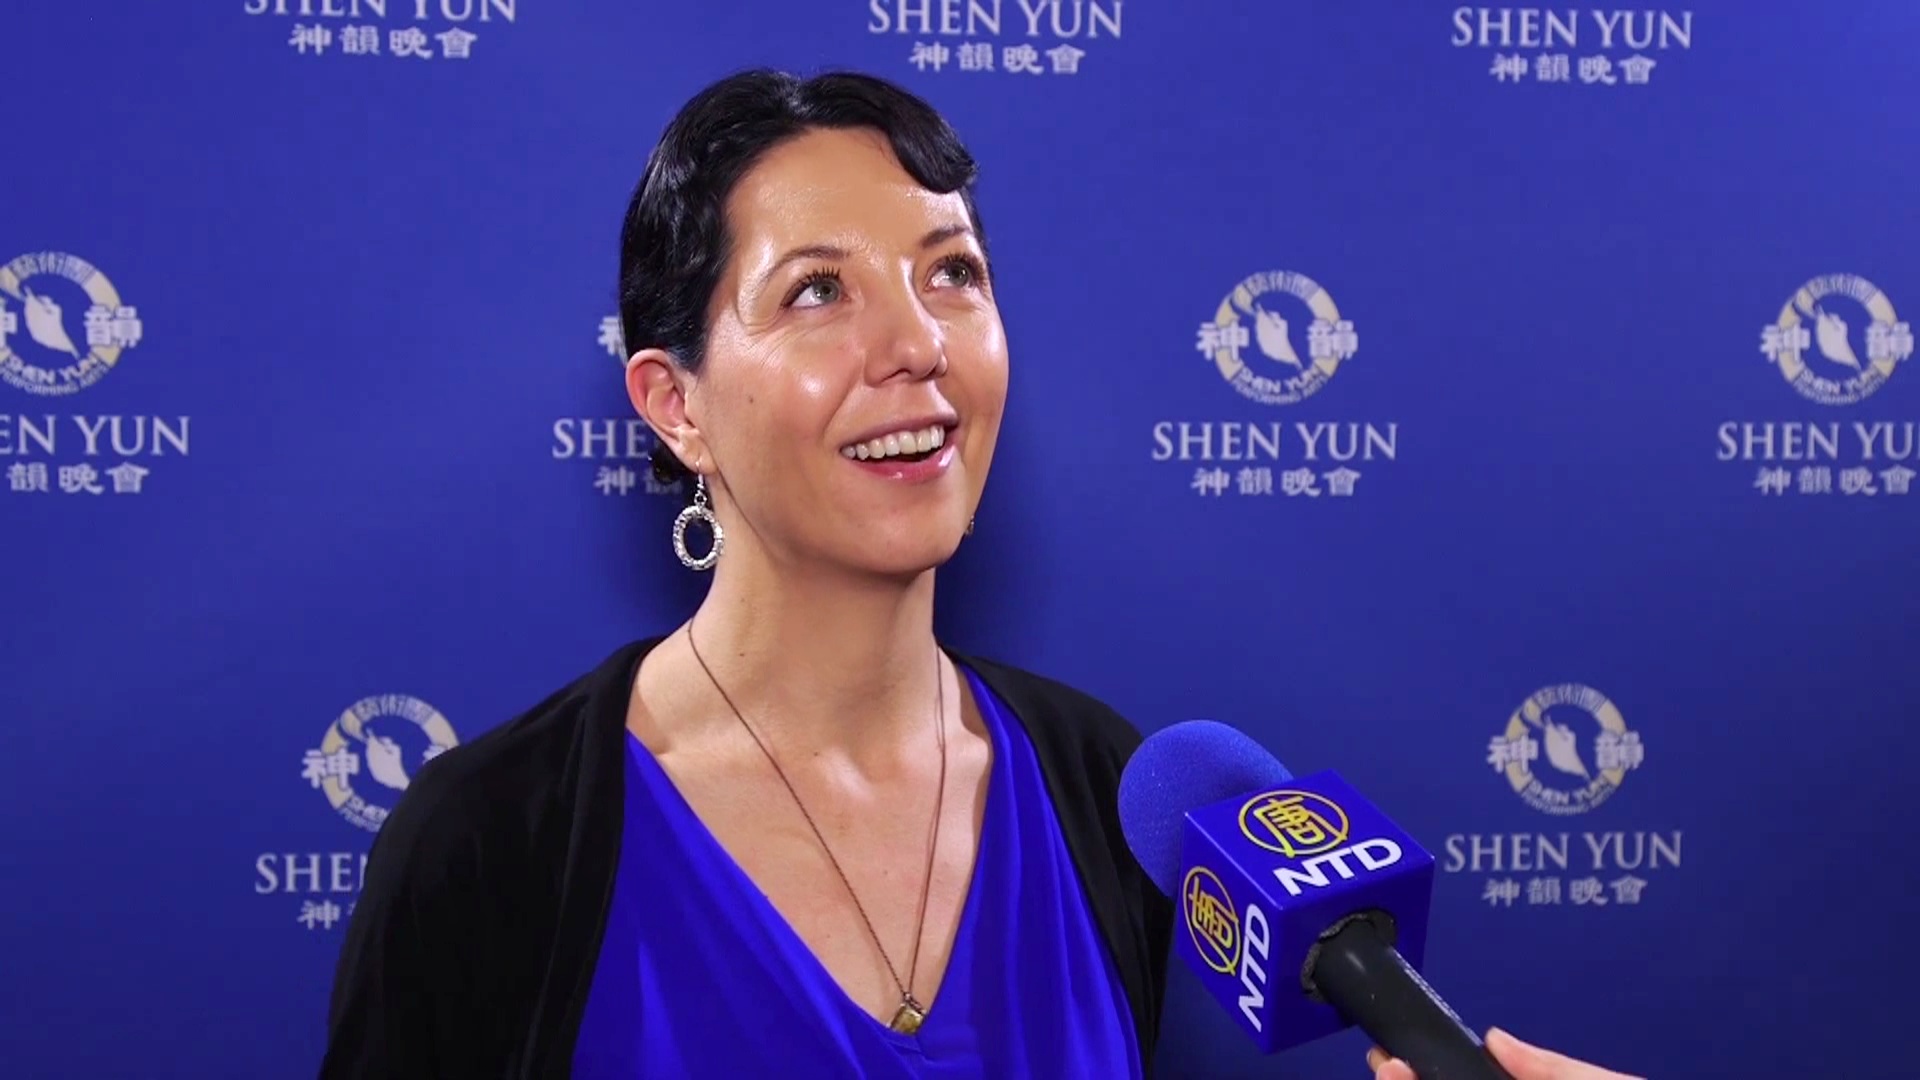 Зрители в Клермонте: шоу Shen Yun — вдохновляющее и прекрасное